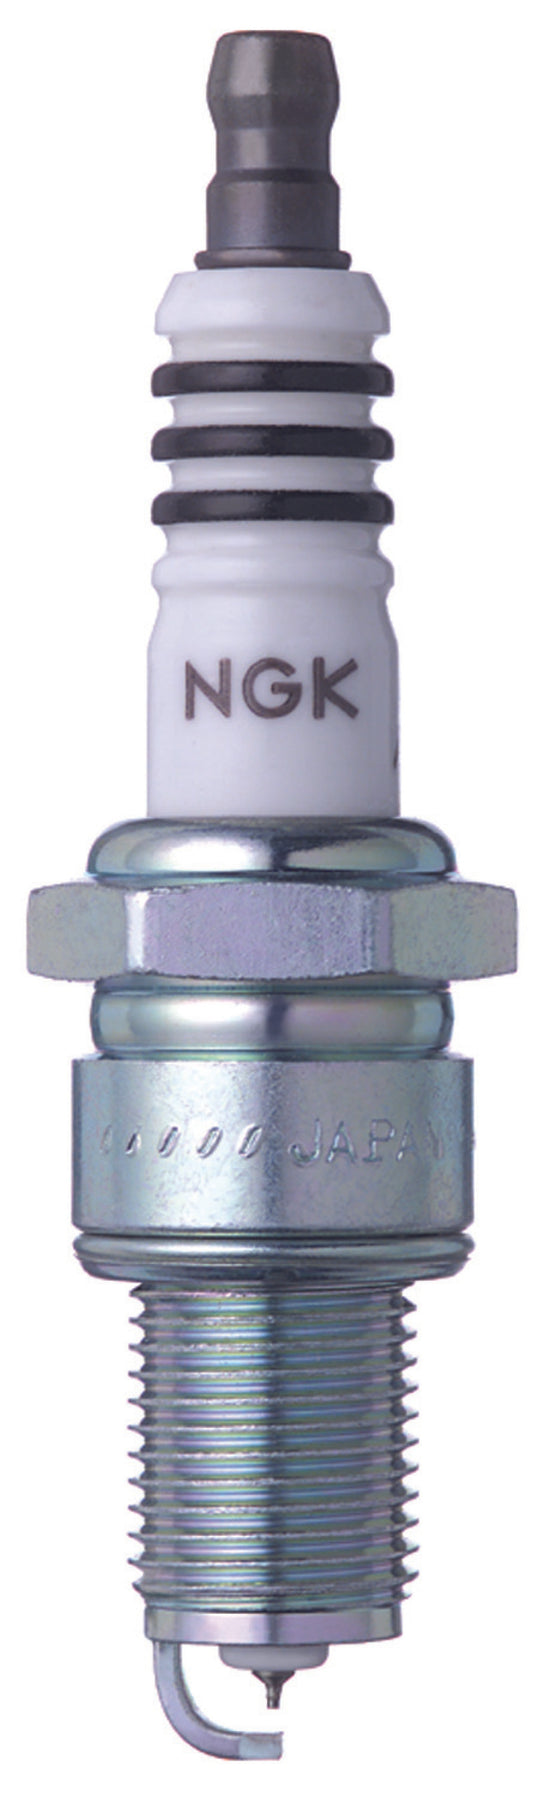 NGK Iridium IX Spark Plug Box of 4 (GR5IX)